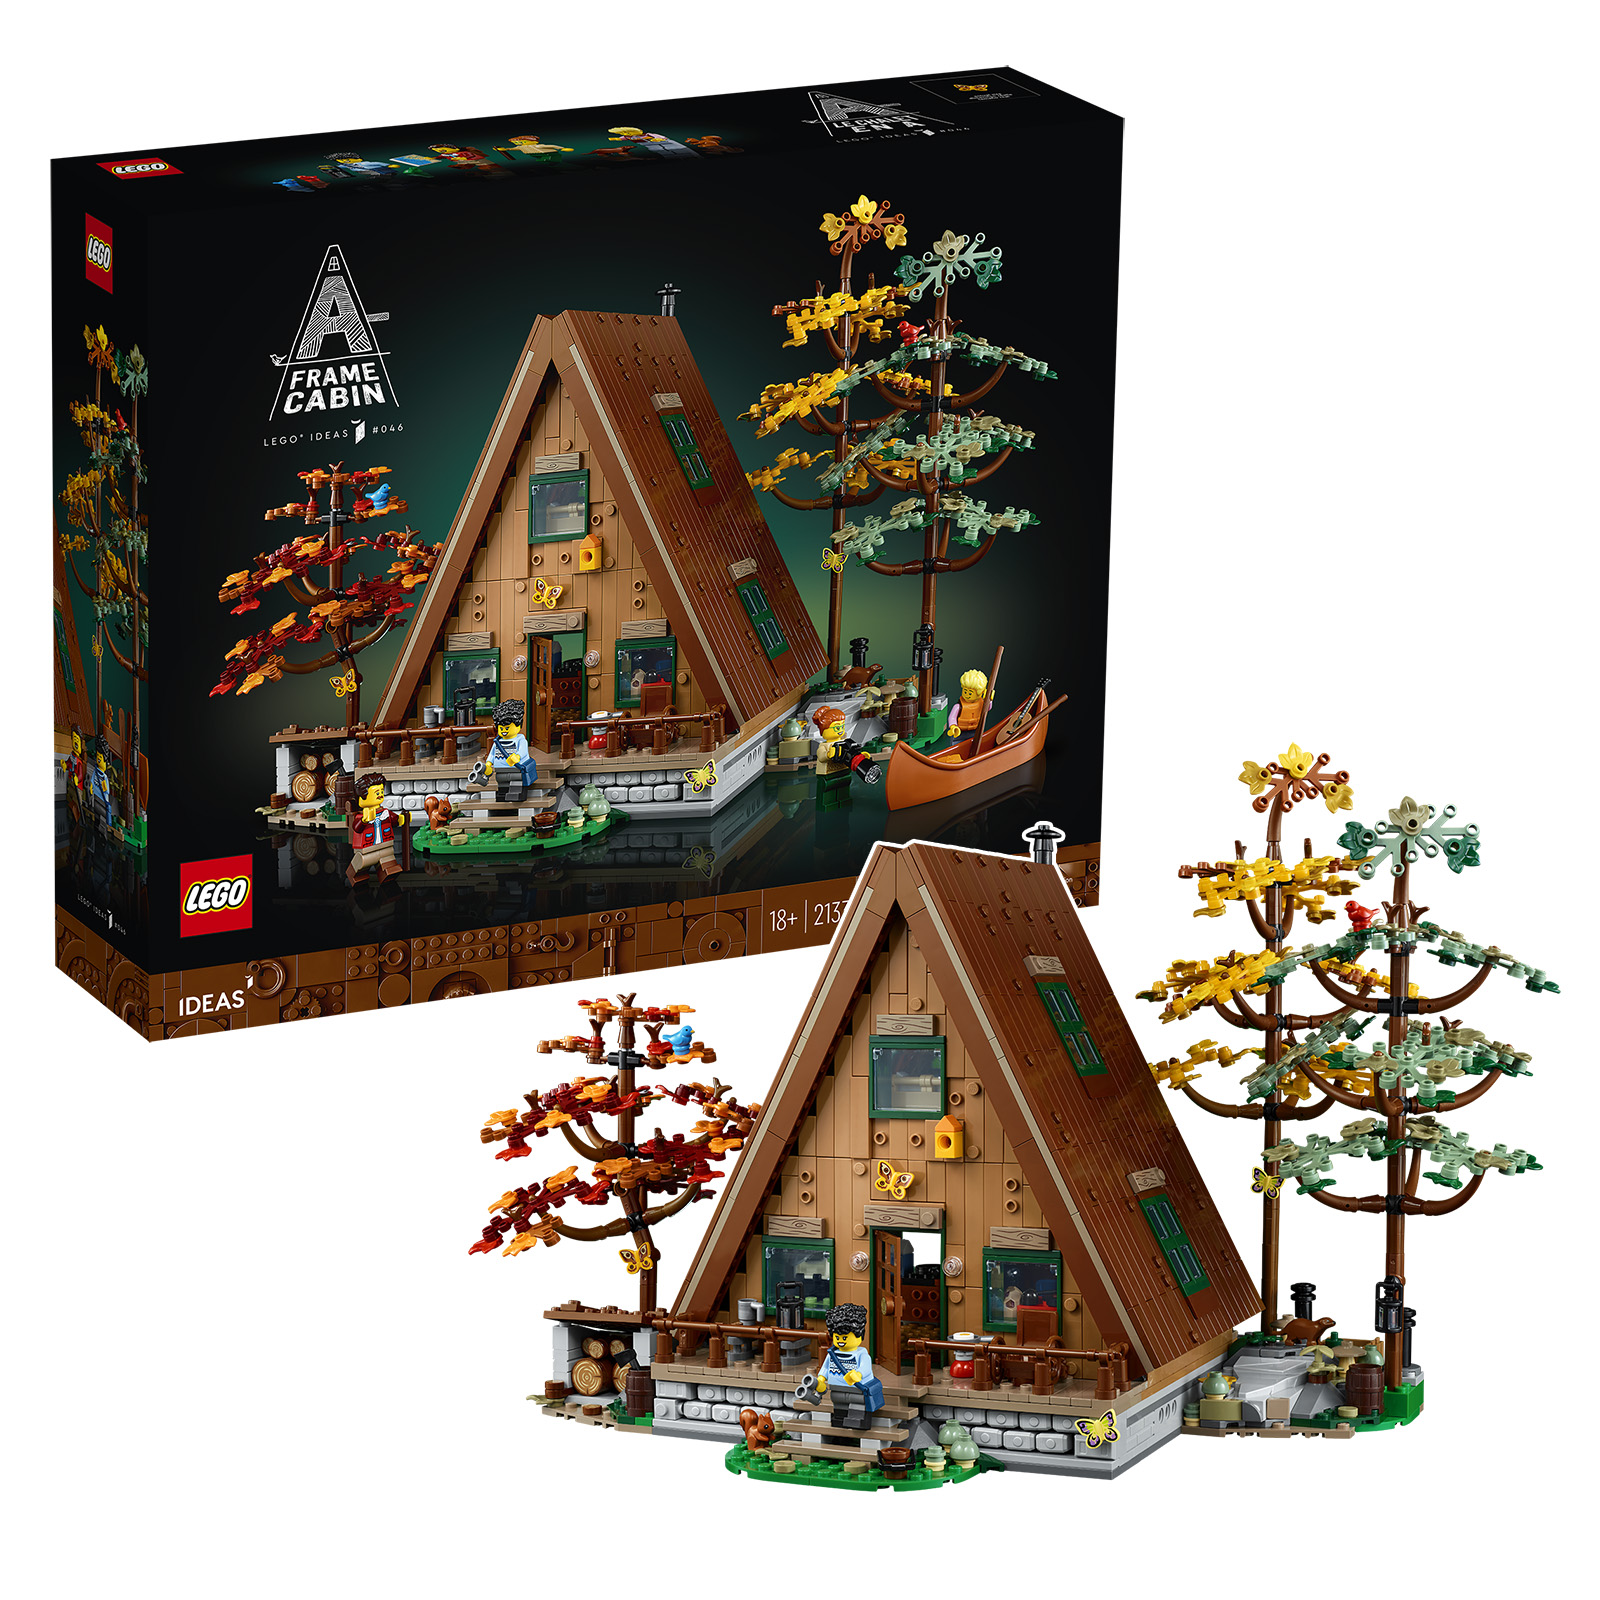 LEGO Ideas 21338 A-Frame Cabin. Այն, ինչ դուք պետք է իմանաք